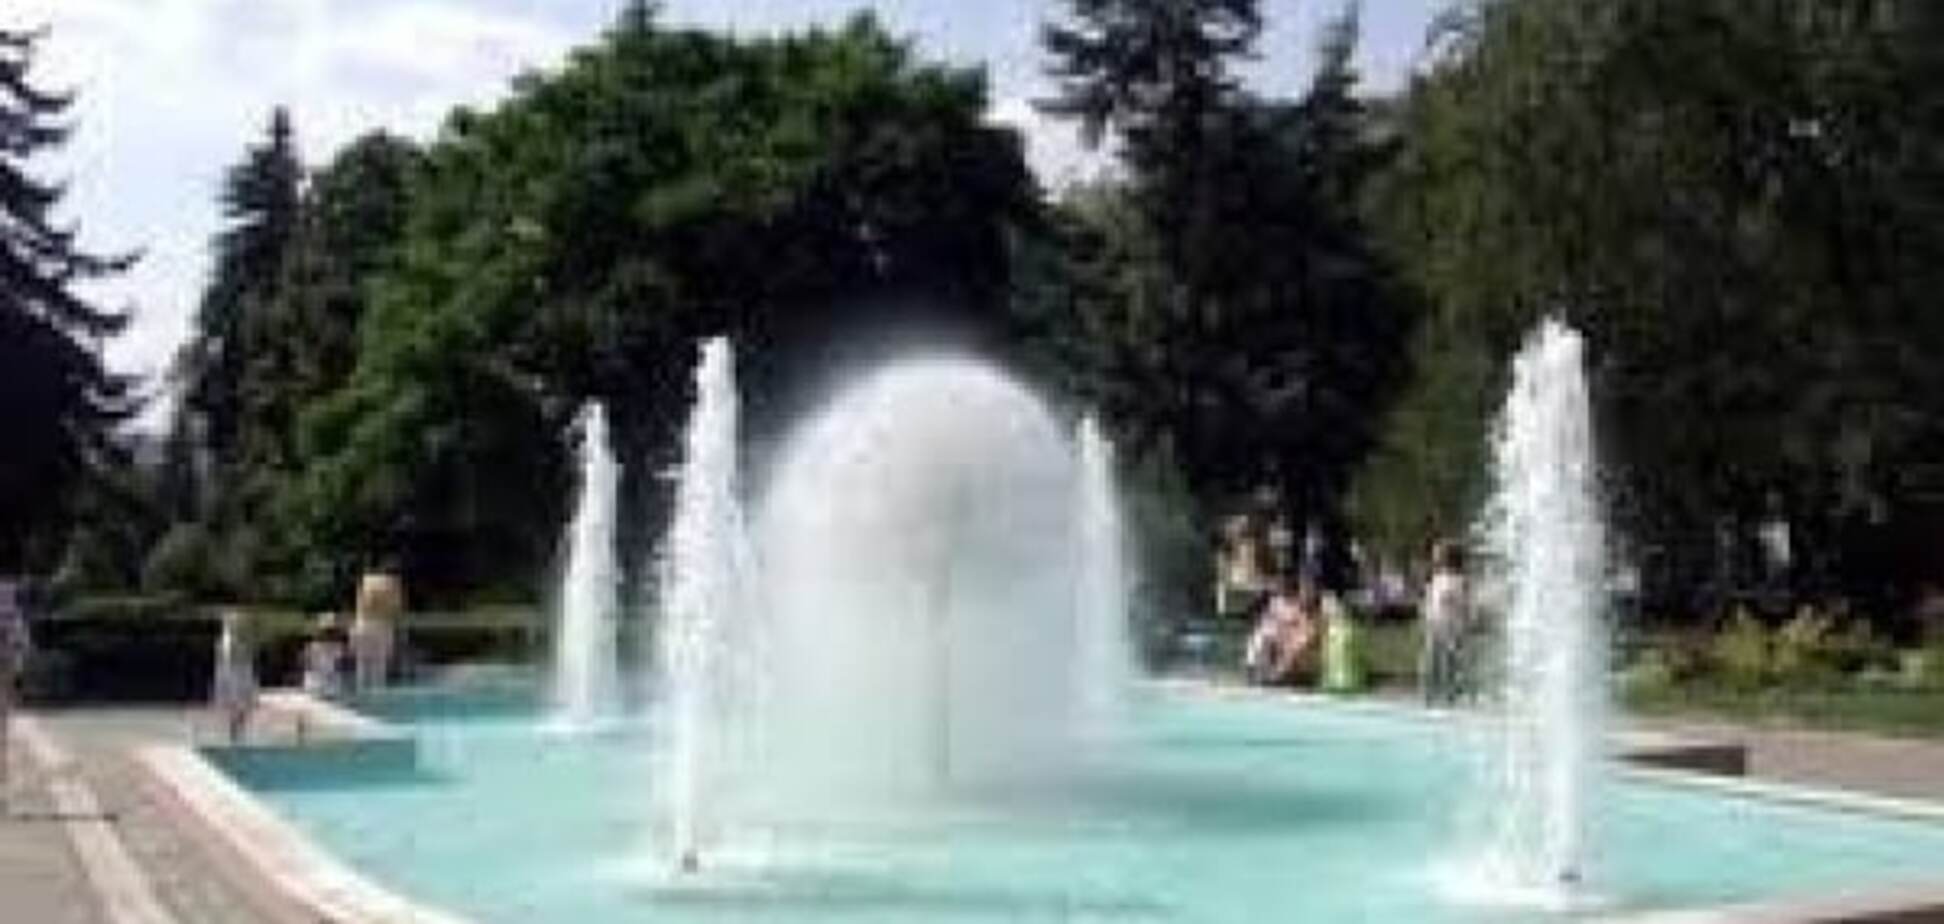 Безкоштовна купель: у центрі Тернополя чоловік купався та прав одяг у фонтані. Відео